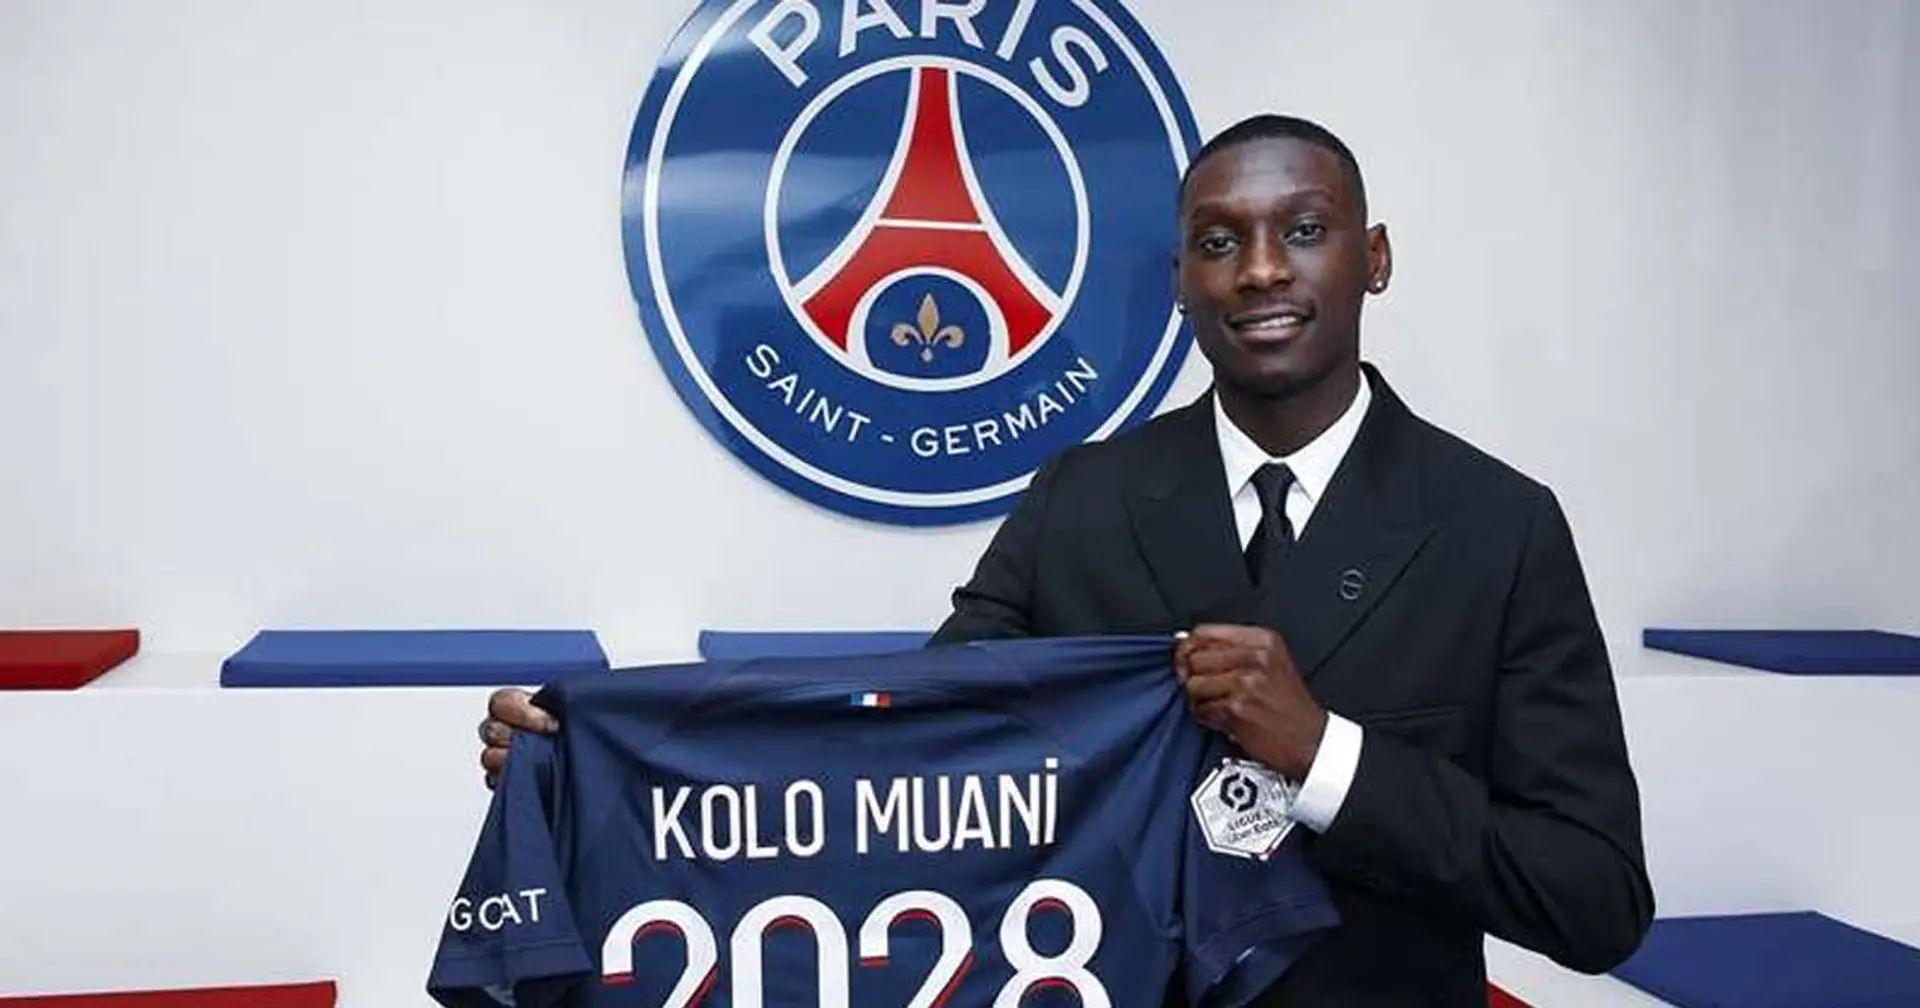 Le vrai montant du transfert de Kolo Muani au PSG dévoilé - ce n'est pas 90 M€